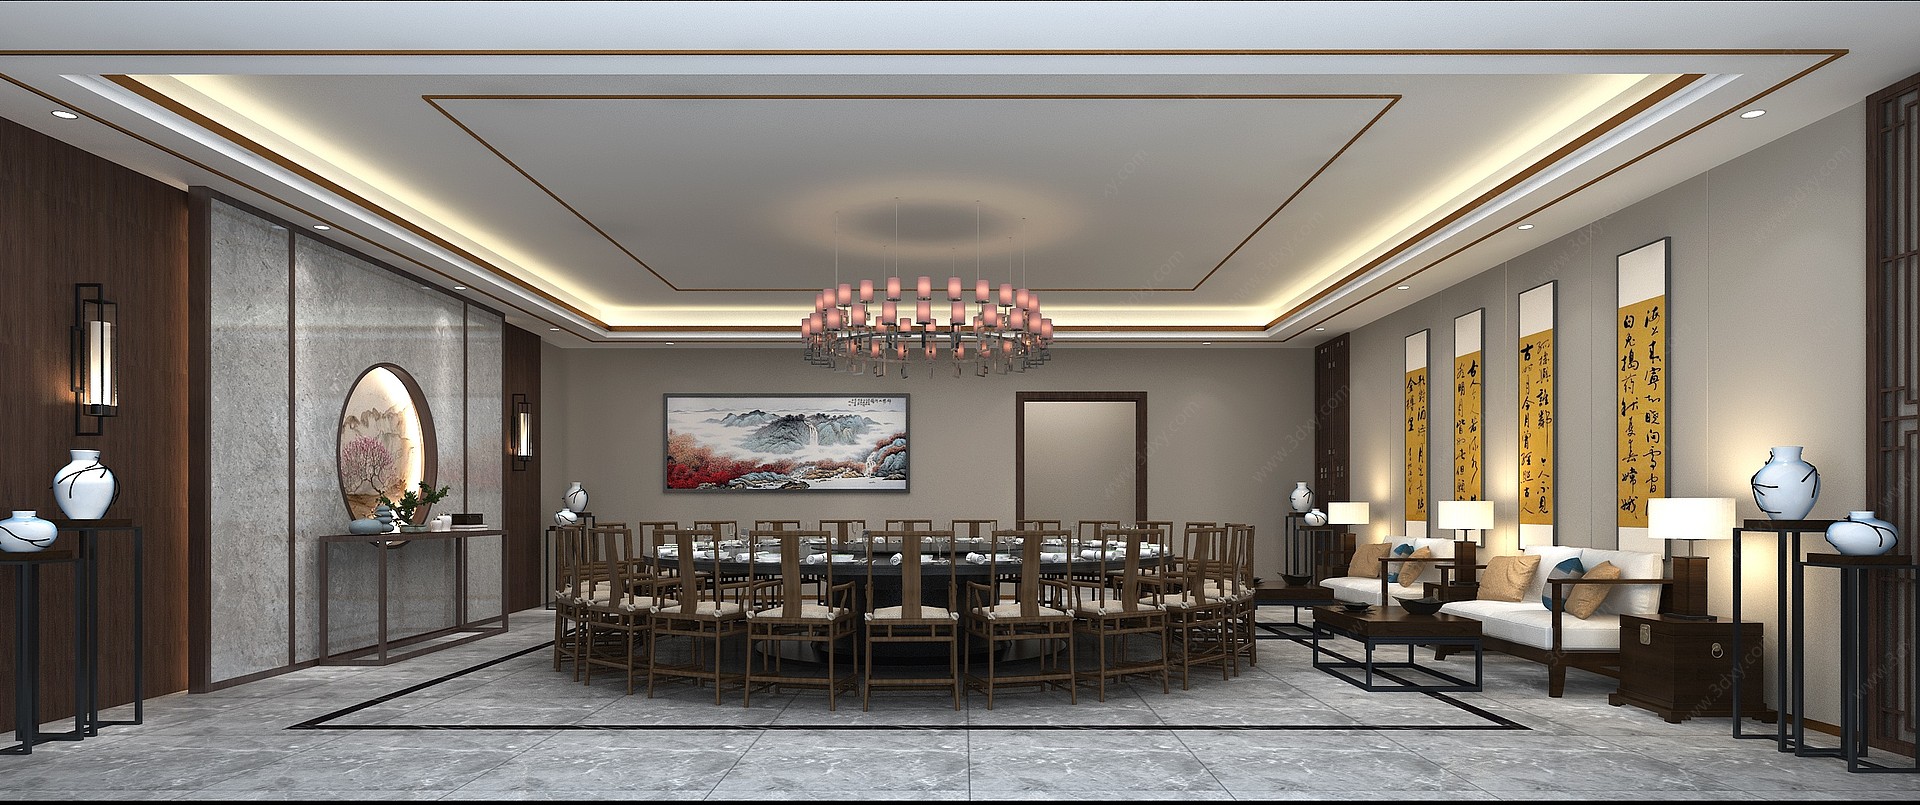 新中式包厢餐厅3D模型